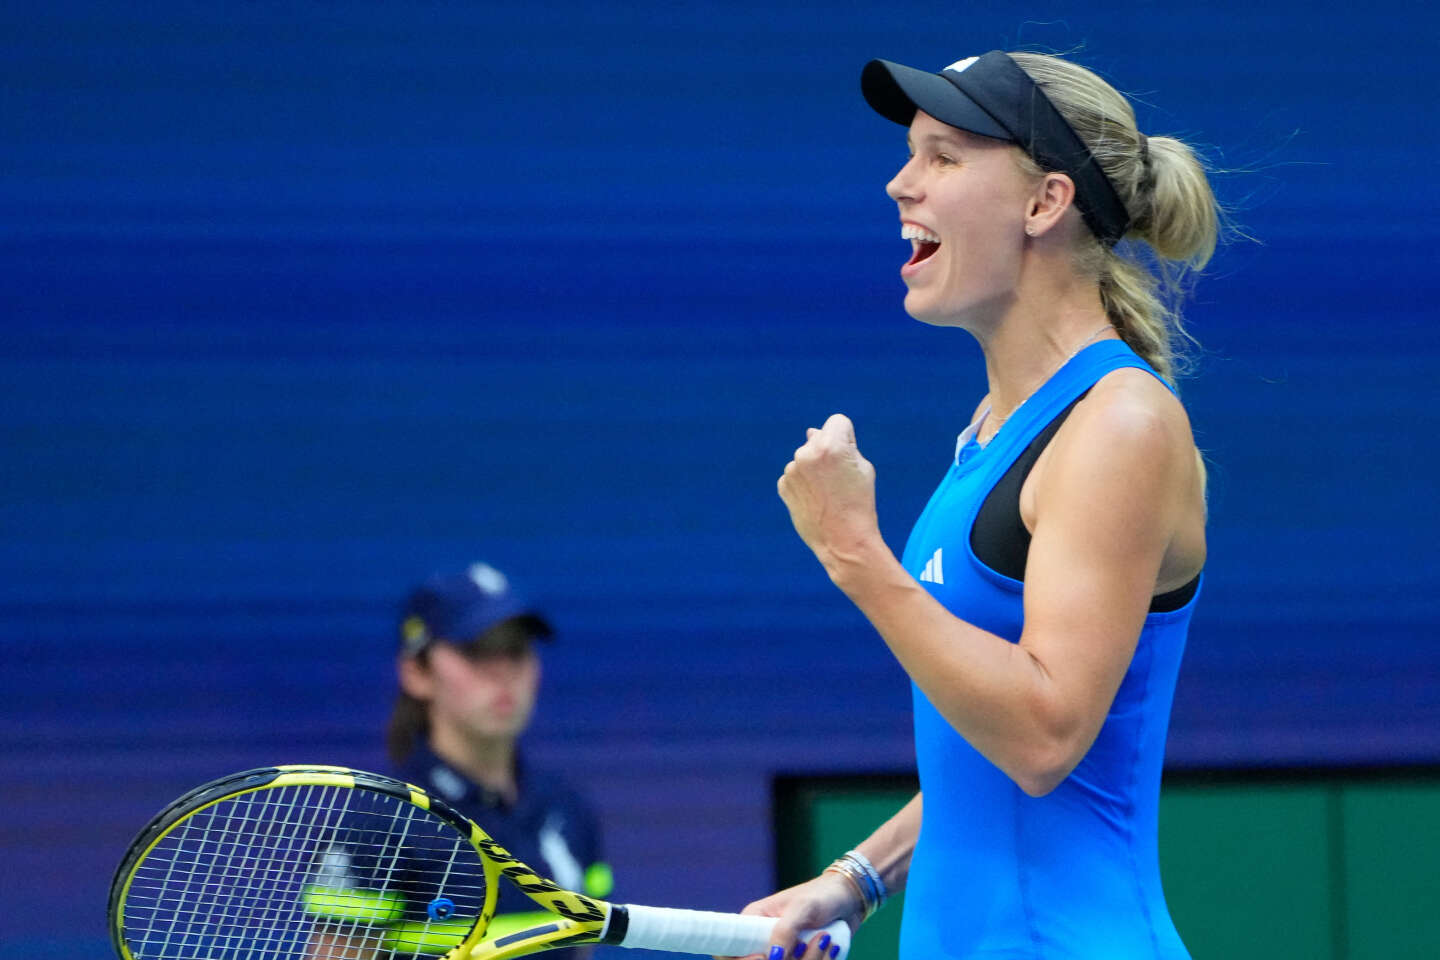 US Open : les Français Mannarino et Bonzi éliminés au 3e tour, la Danoise Wozniacki poursuit son retour gagnant